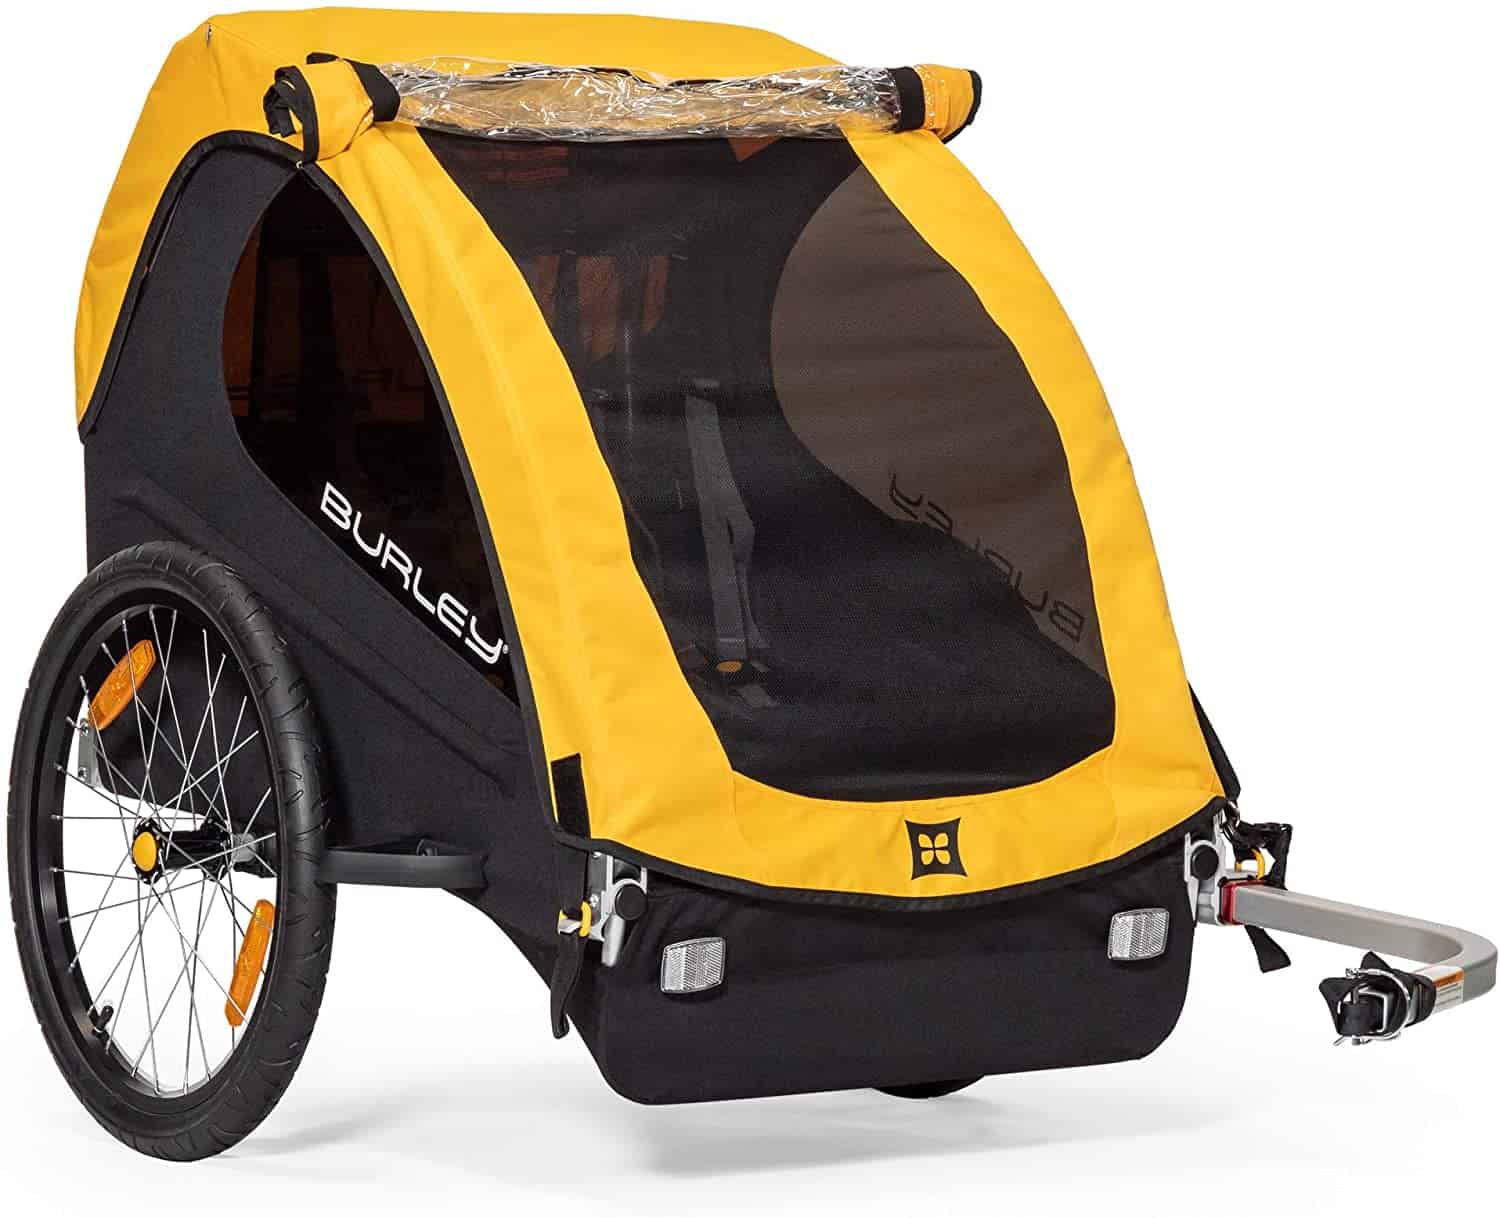 Remolque de bicicleta más conveniente para transportar niños Remolque de bicicleta Burley Bee